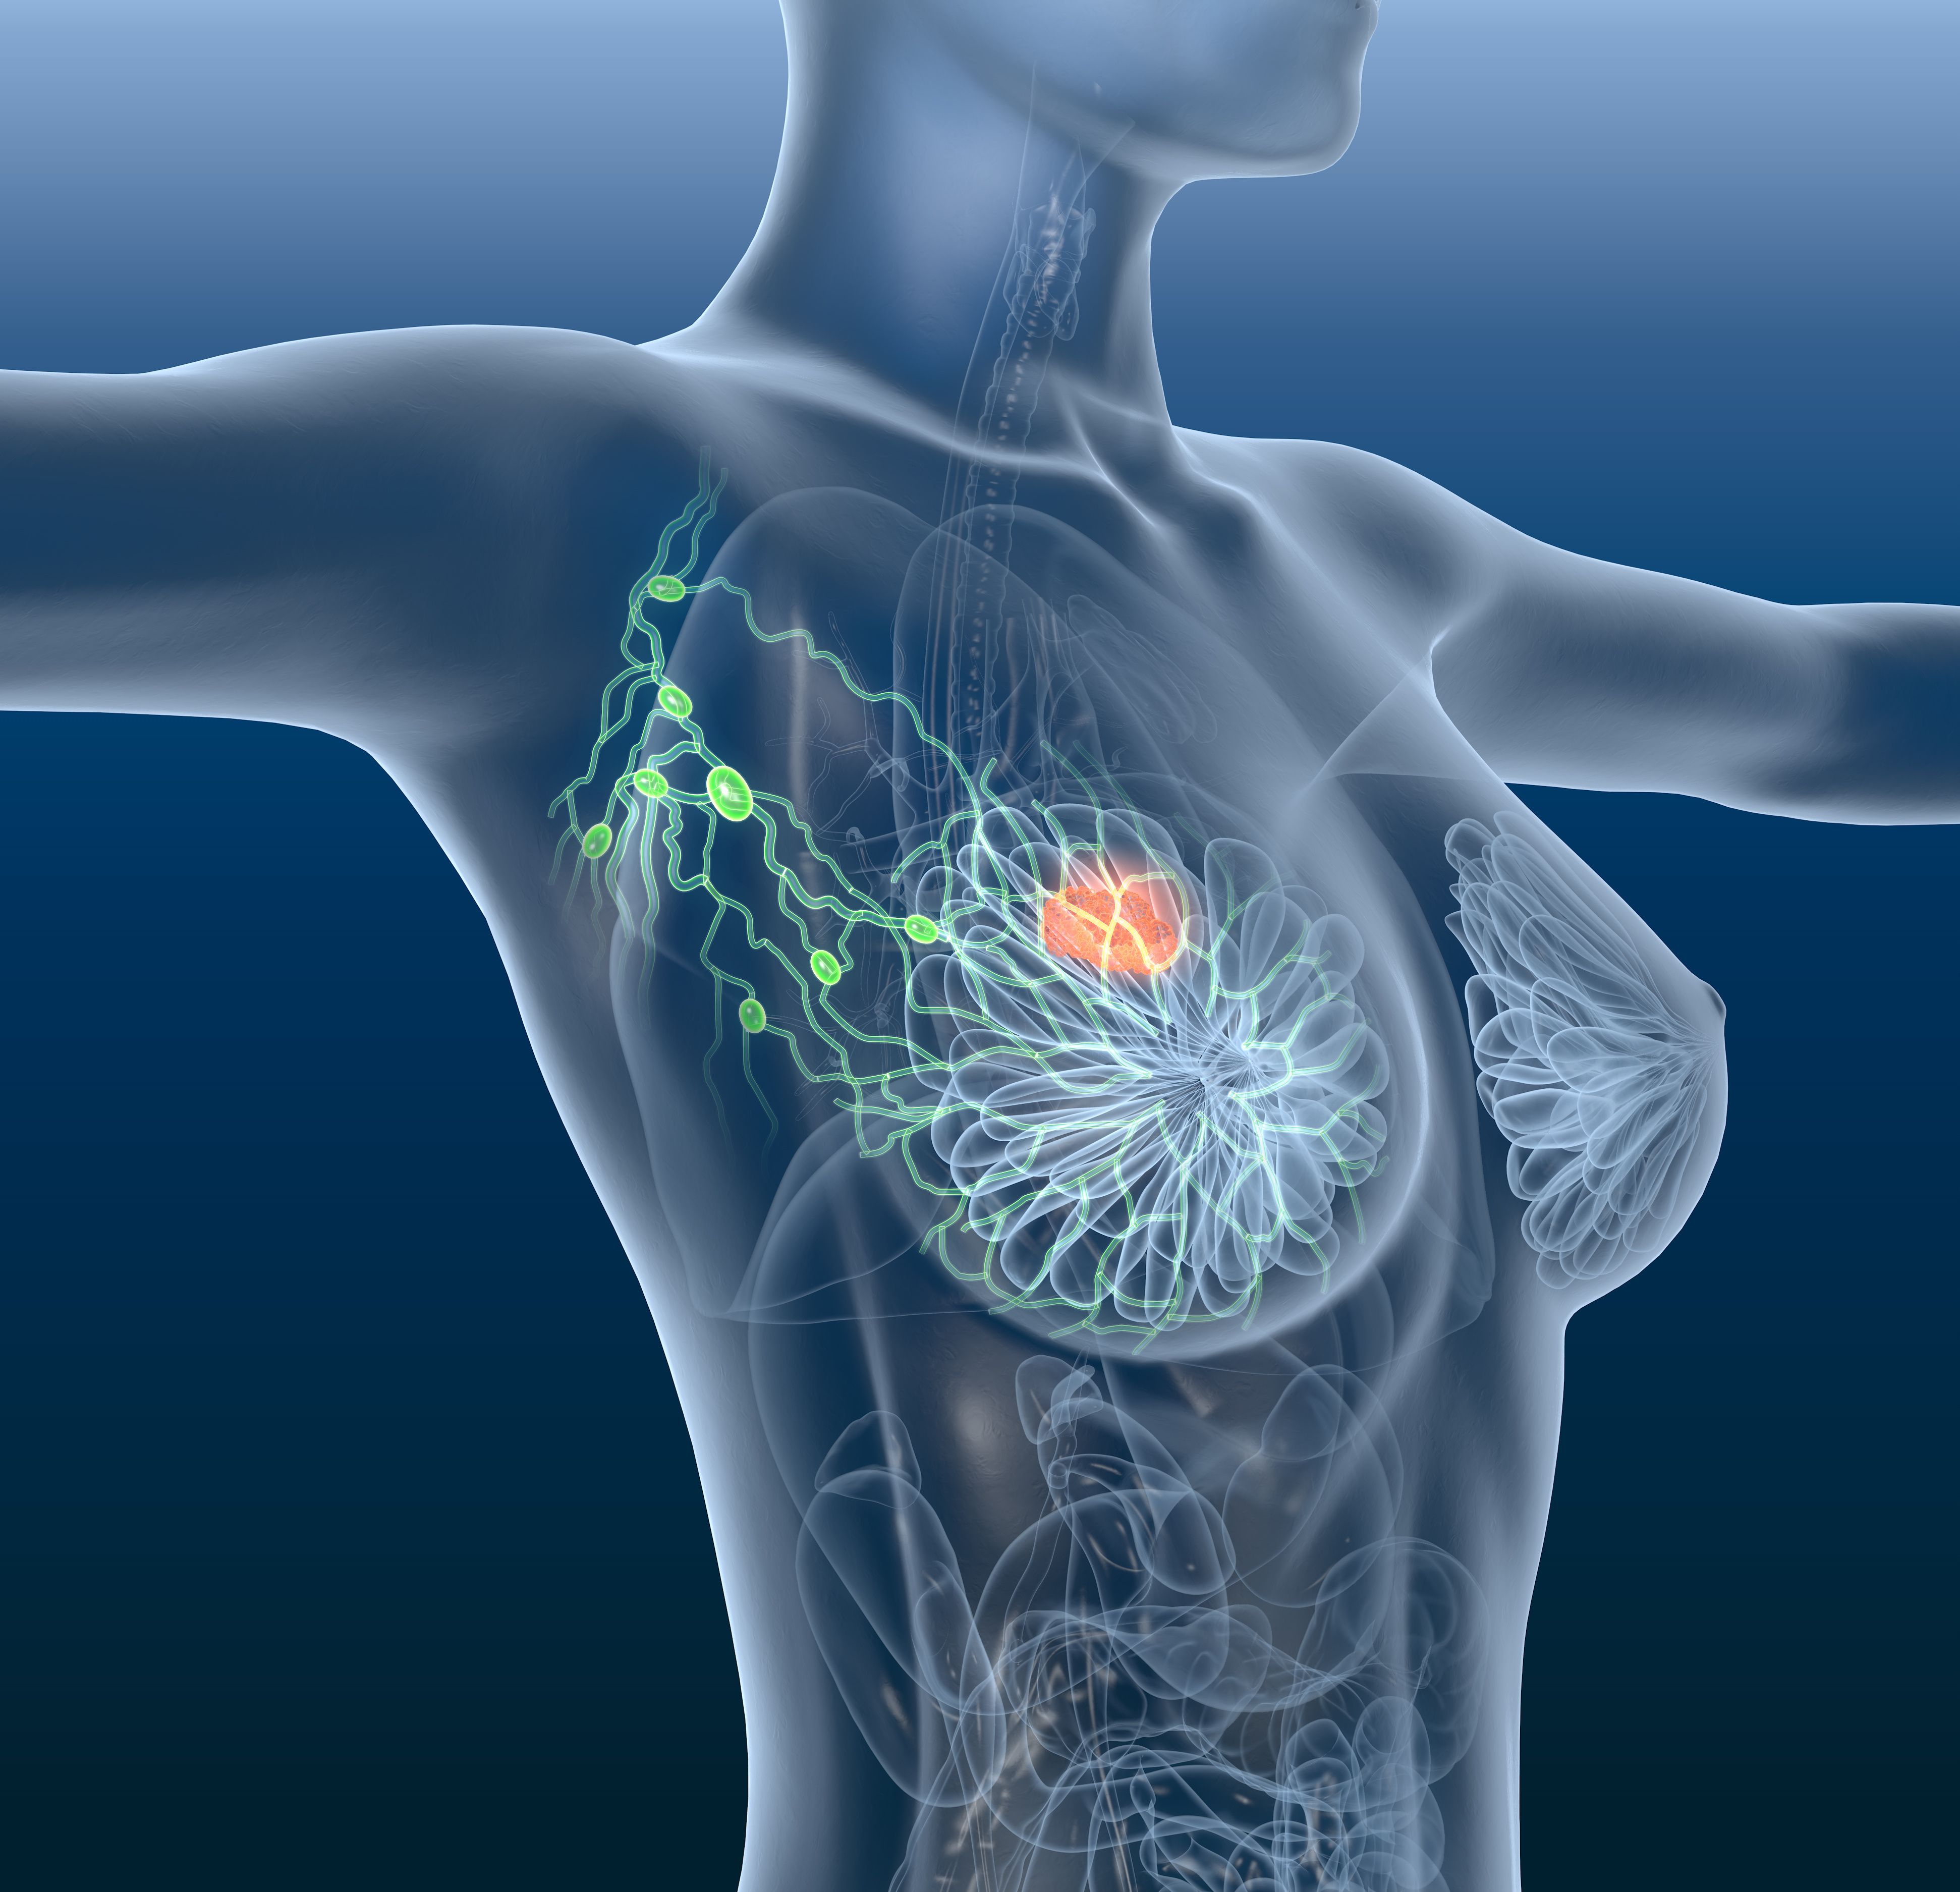 El estudio indica que la resonancia magnética es el mejor método para detectar el cáncer de mama en mamas de alta densidad